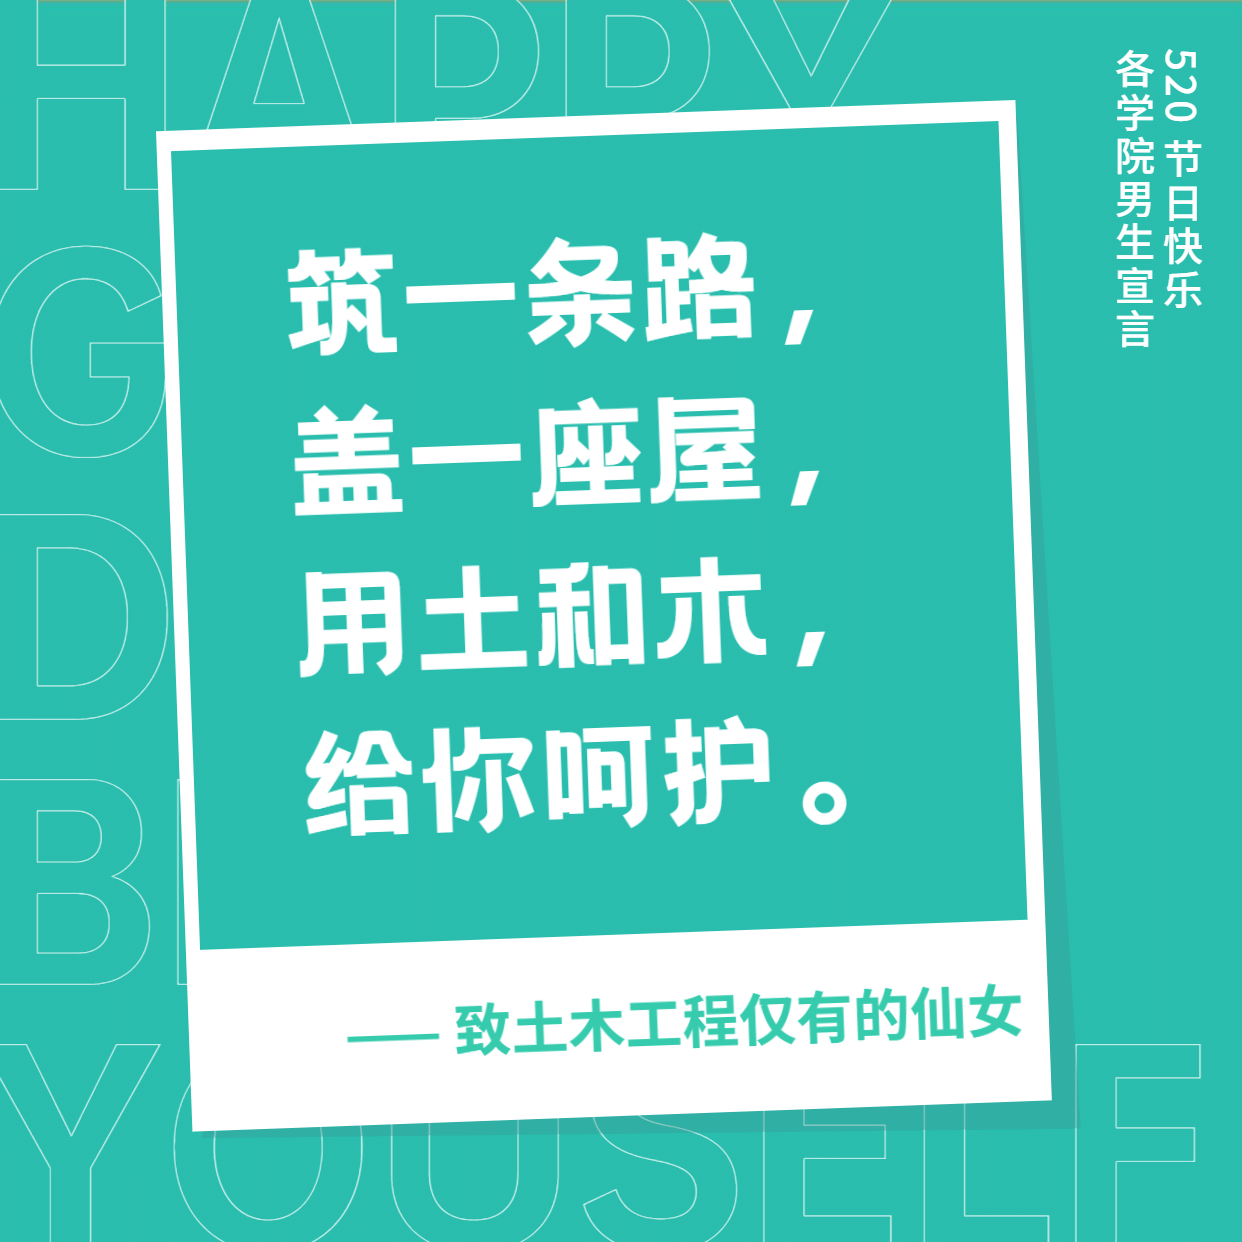 3.7女生节土木工程学院表白方形海报